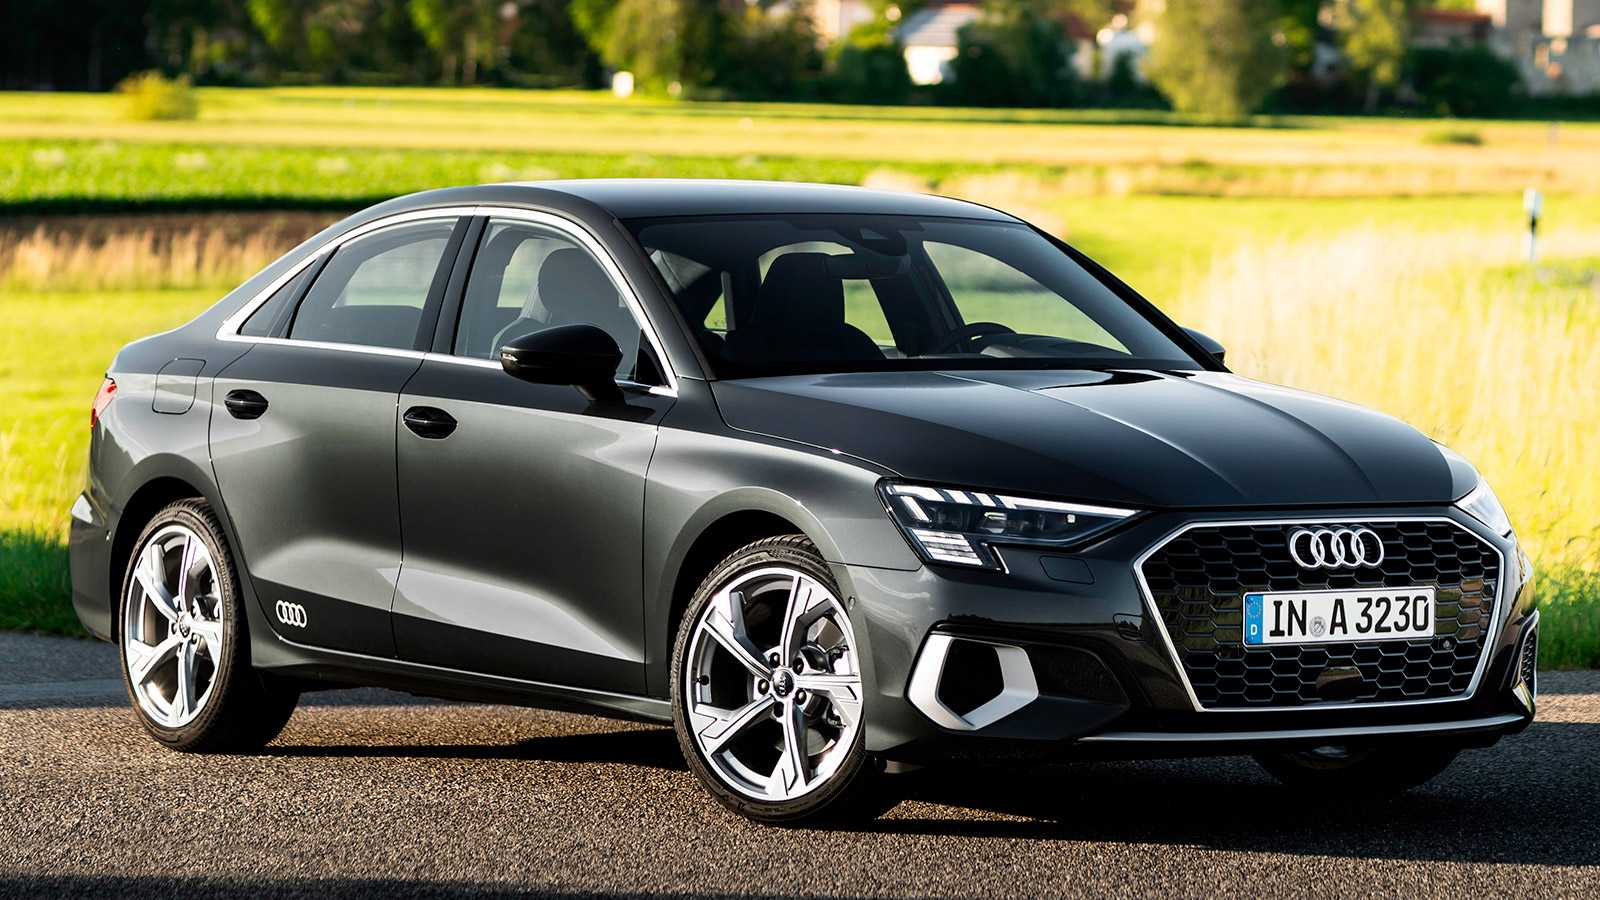 Audi a3 8y 2021, хэтчбек и седан: модели нового поколения на автомобильном рынке